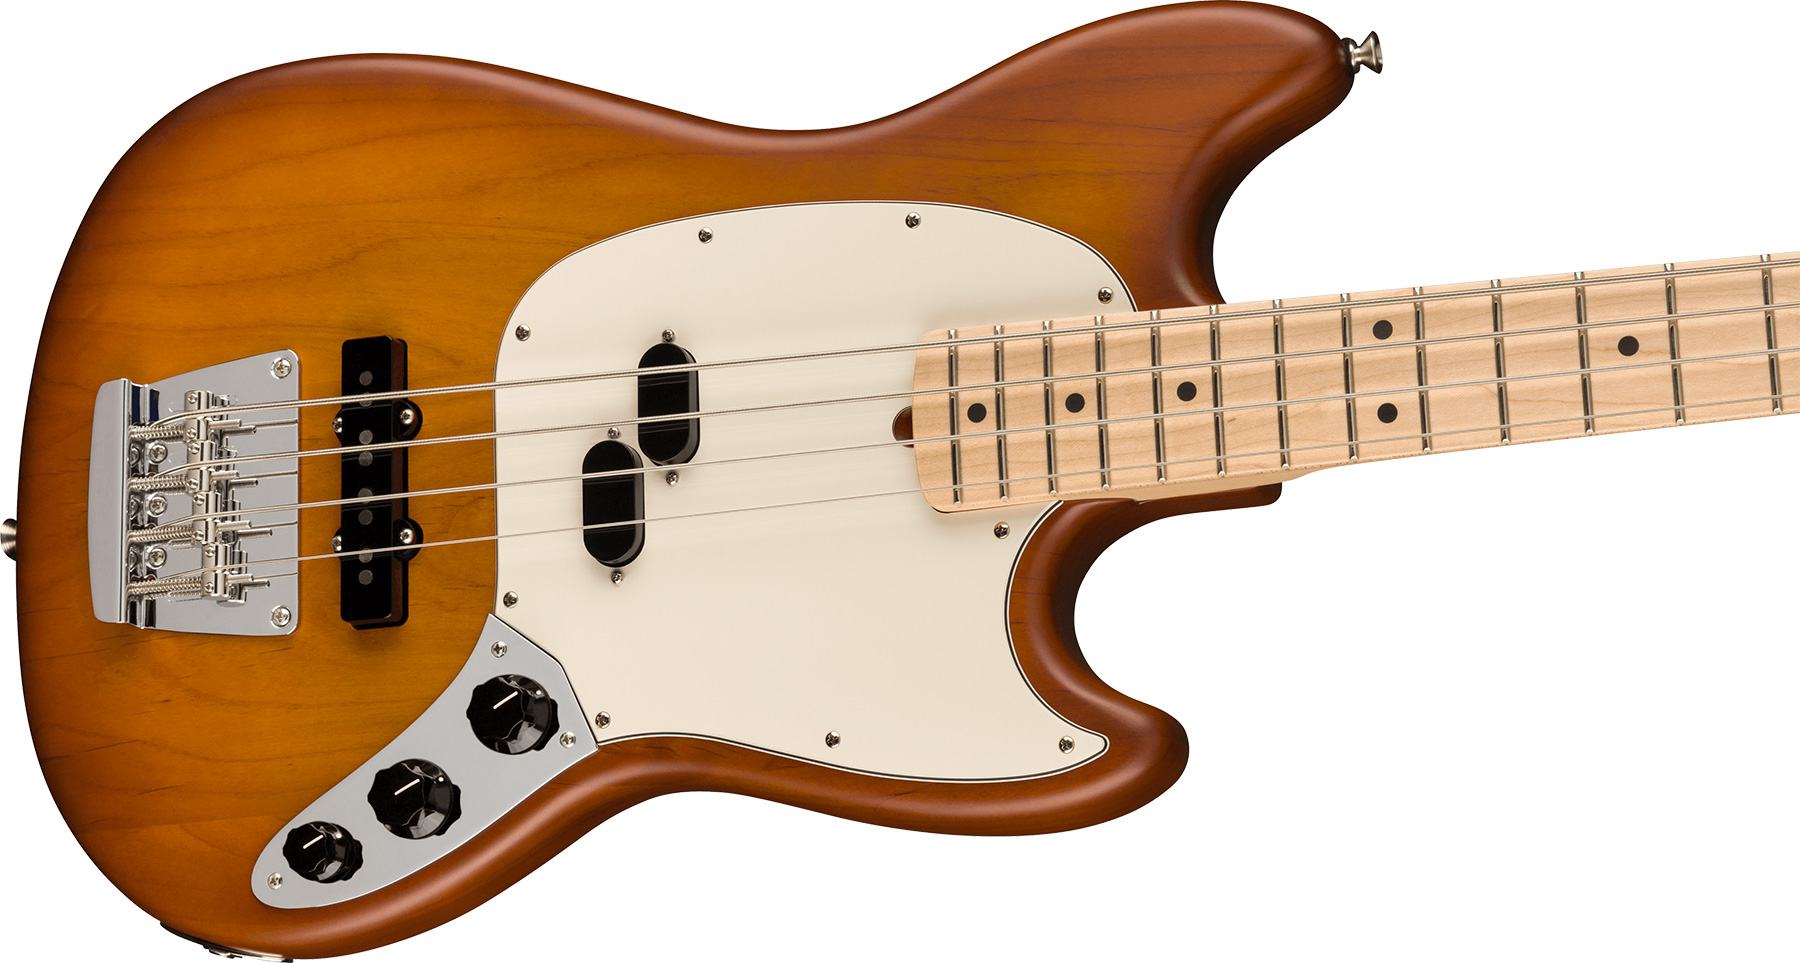 Fender Mustang Bass American Performer Ltd Usa Rw - Honey Burst Satin - Solidbody E-bass - Variation 2